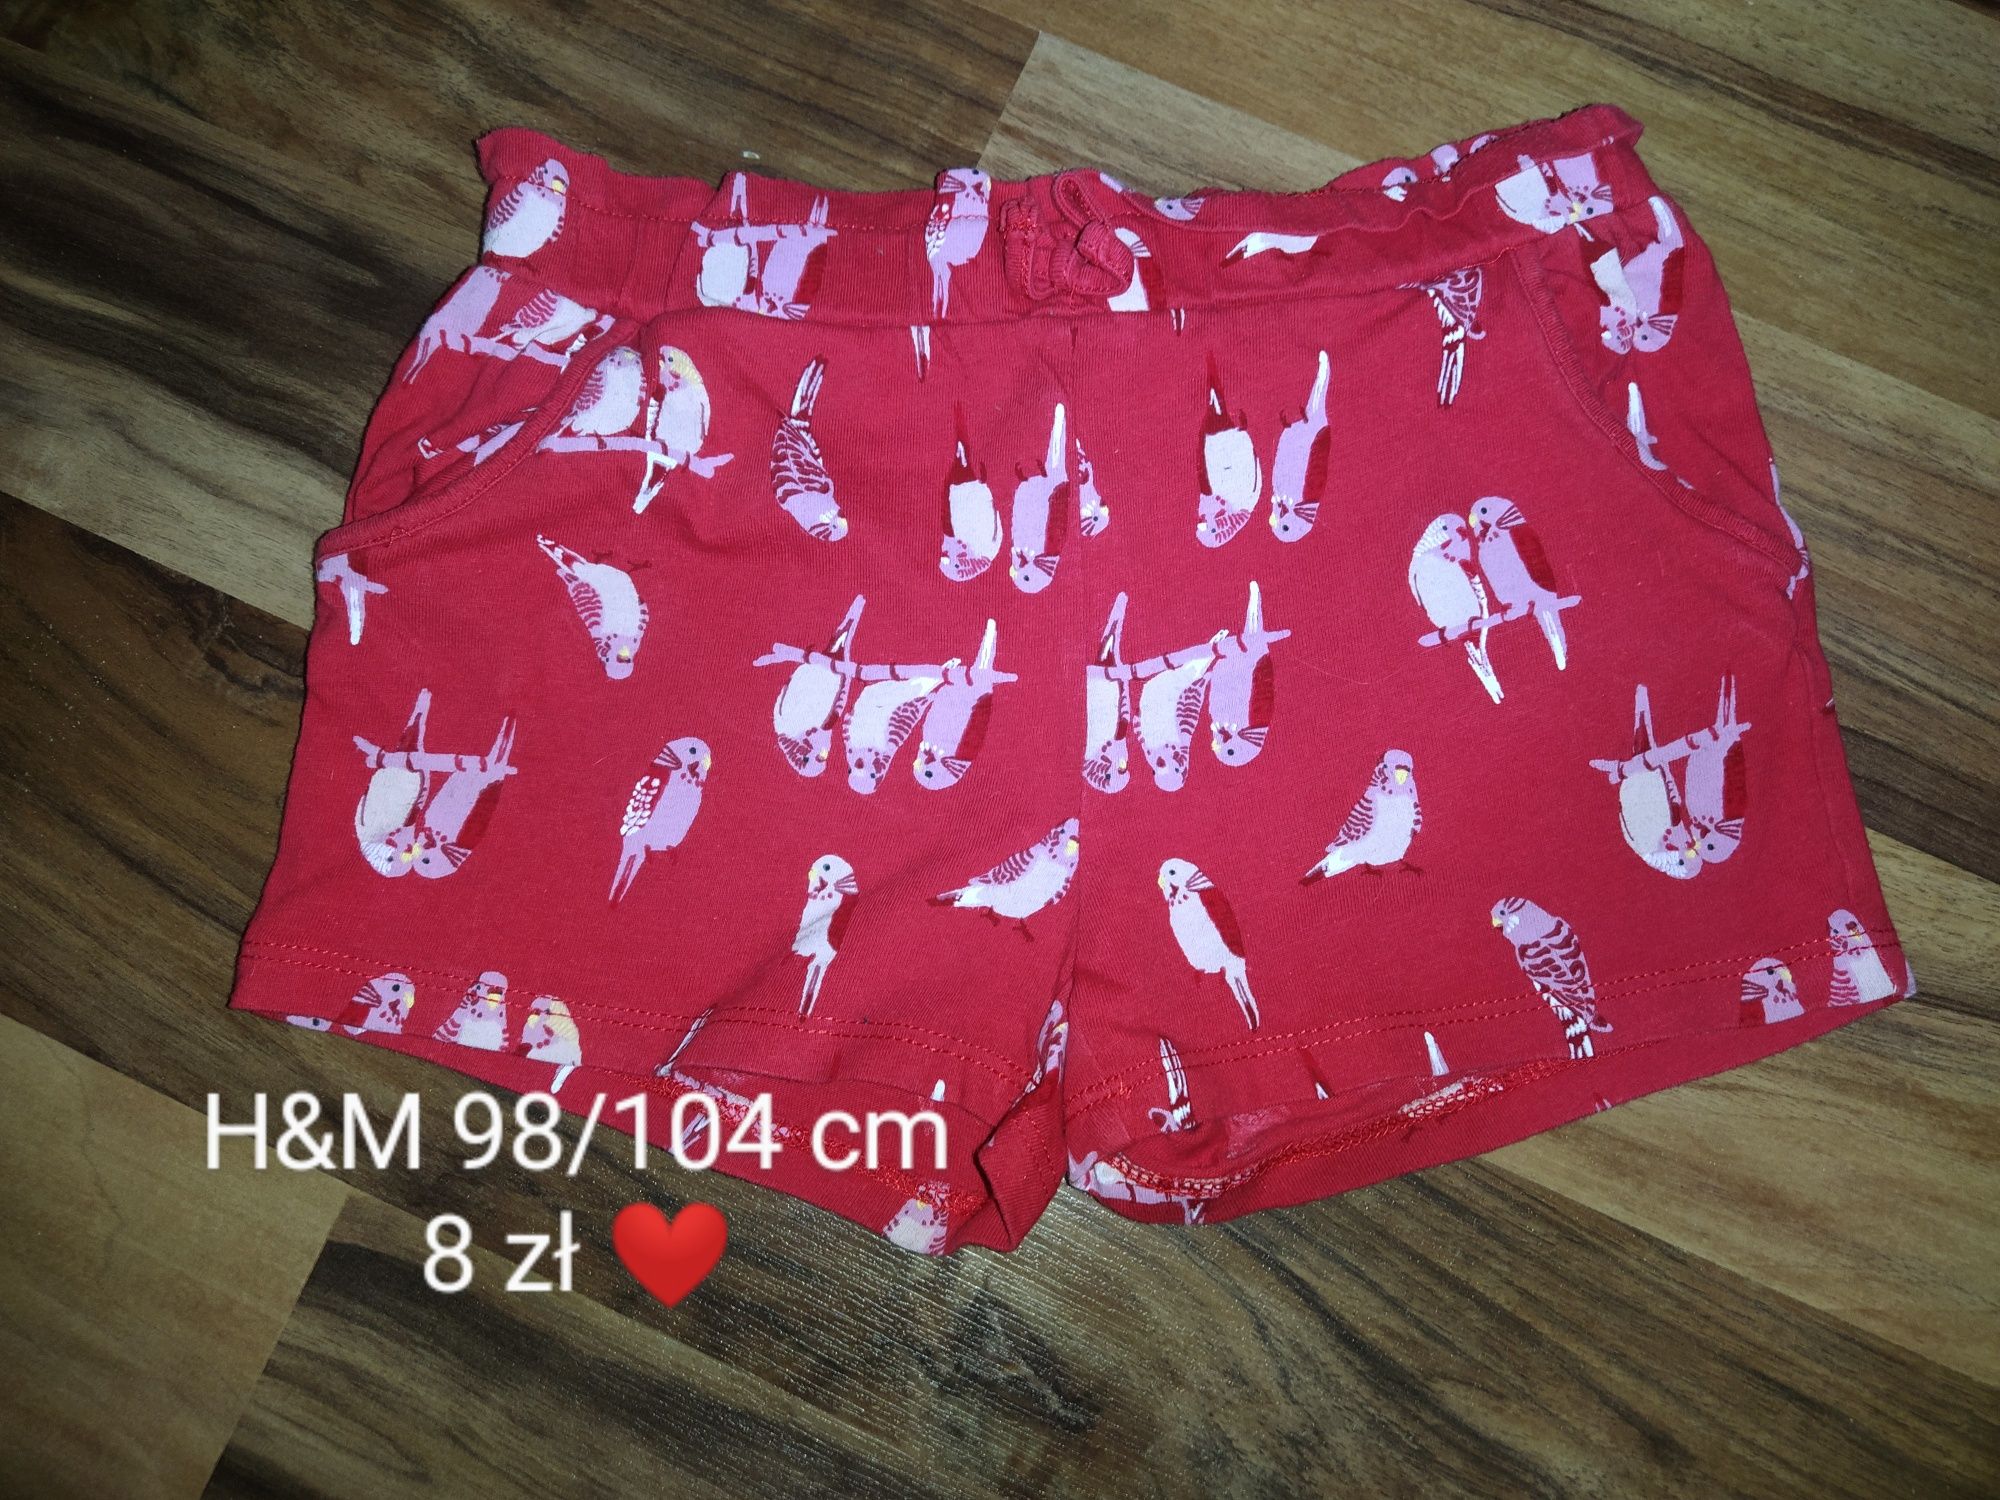 Prześliczne szorty H&M rozmiar 98/104 cm